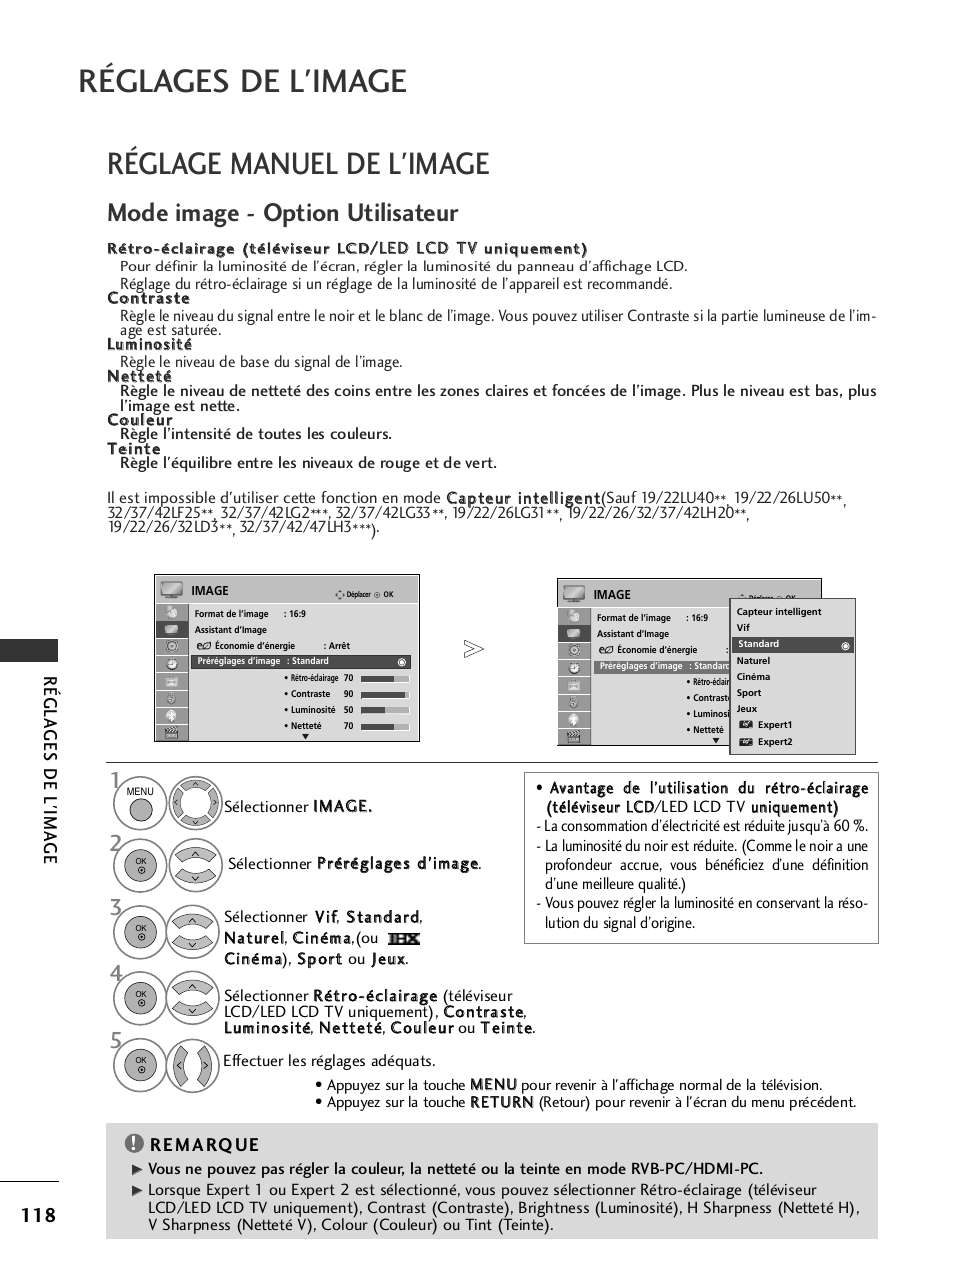 Réglages de l'image, Réglage manuel de l'image, Mode image - option utilisateur | Régla ges de l'ima g e | LG 32LH40 Manuel d'utilisation | Page 120 / 180